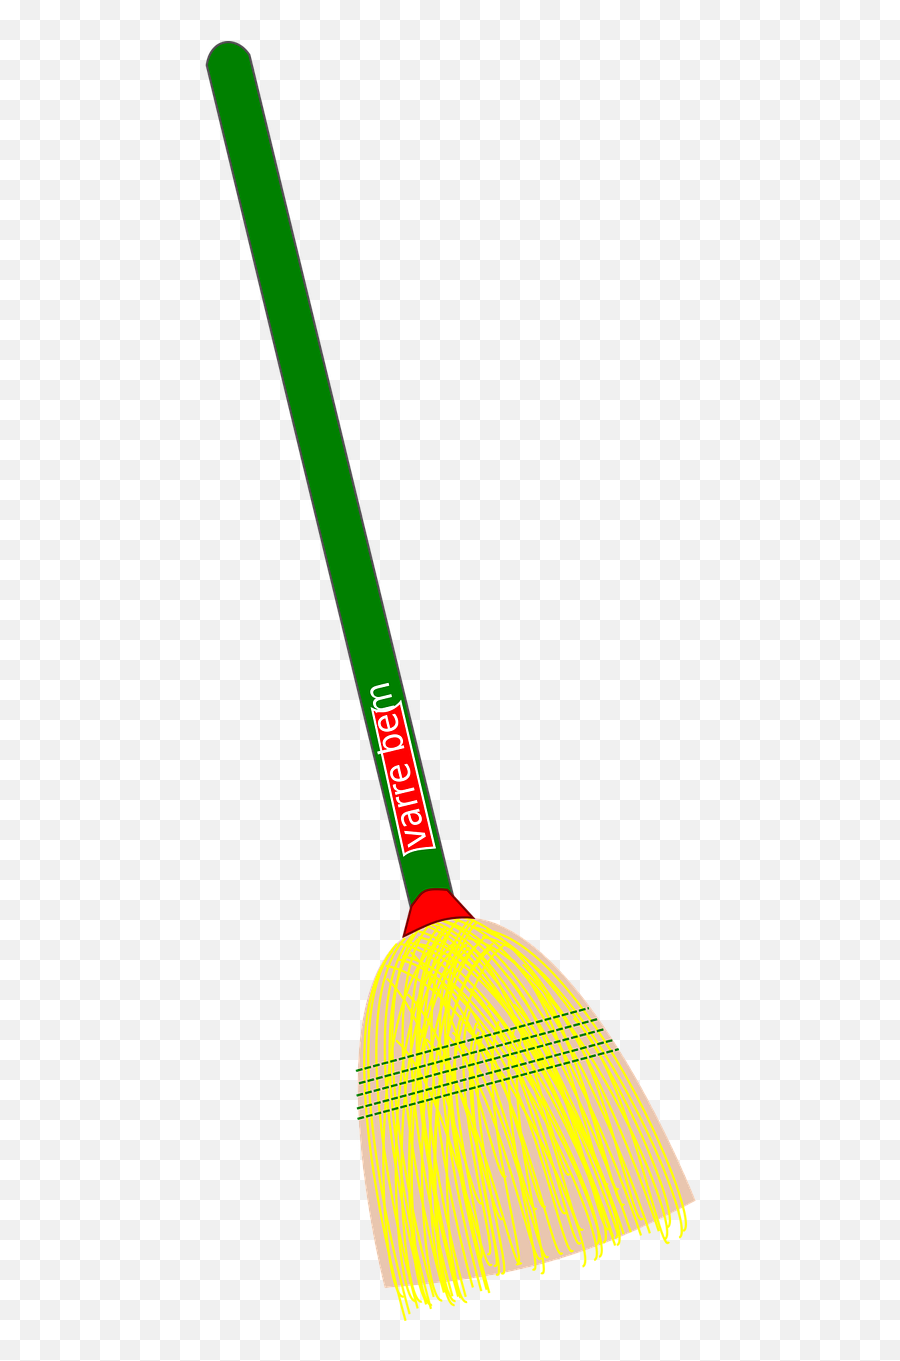 Broom Cleaning Household Vassoura - Clip Art Image Of A Broom Emoji,Vacuum Cleaner Emoji